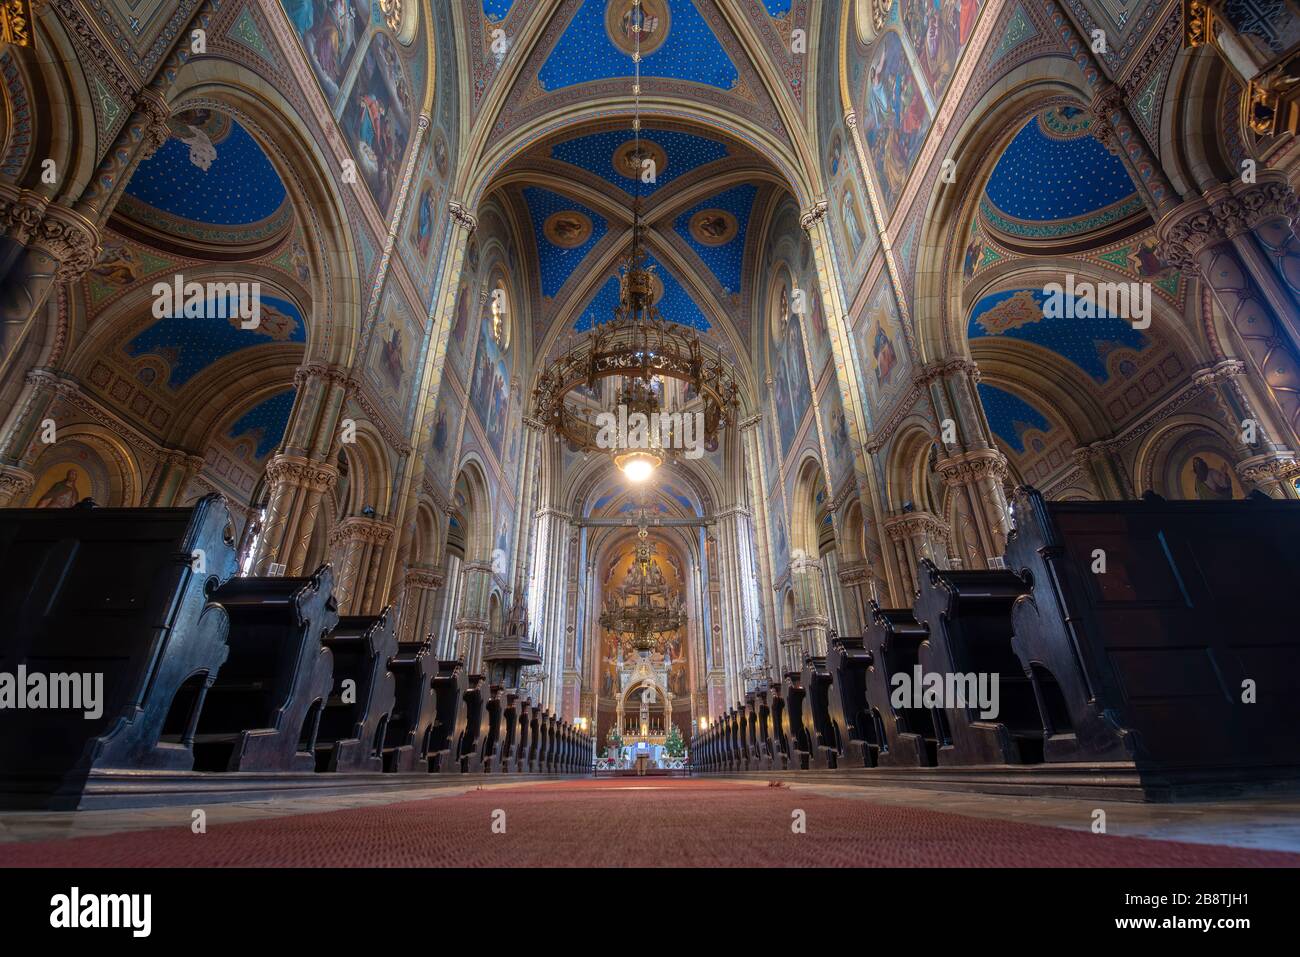 Wien, Österreich - Inneres der Altlerchenfelder Kirche in Wien. Sie weist Klassizismus und Historismus auf. Presbyterium und Altar Stockfoto